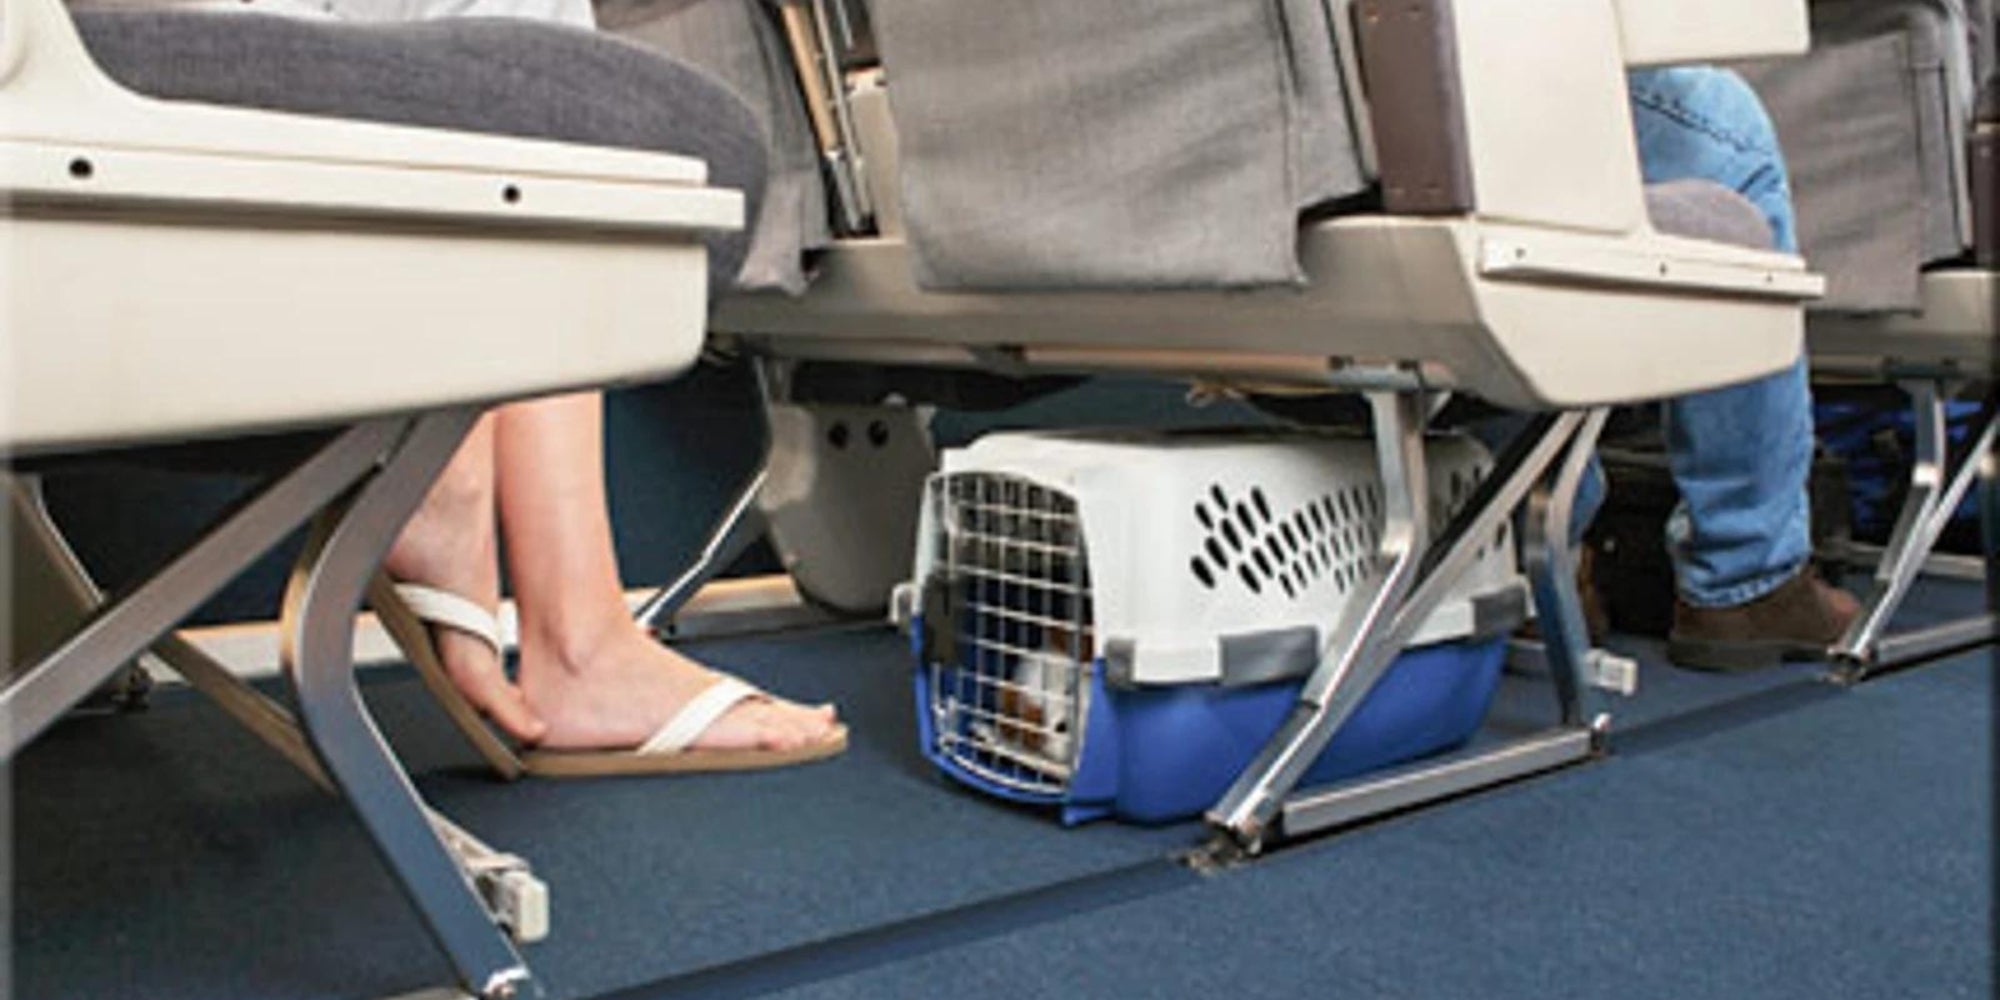 Gato acurrucado tranquilamente en su transportadora debajo del asiento del avion